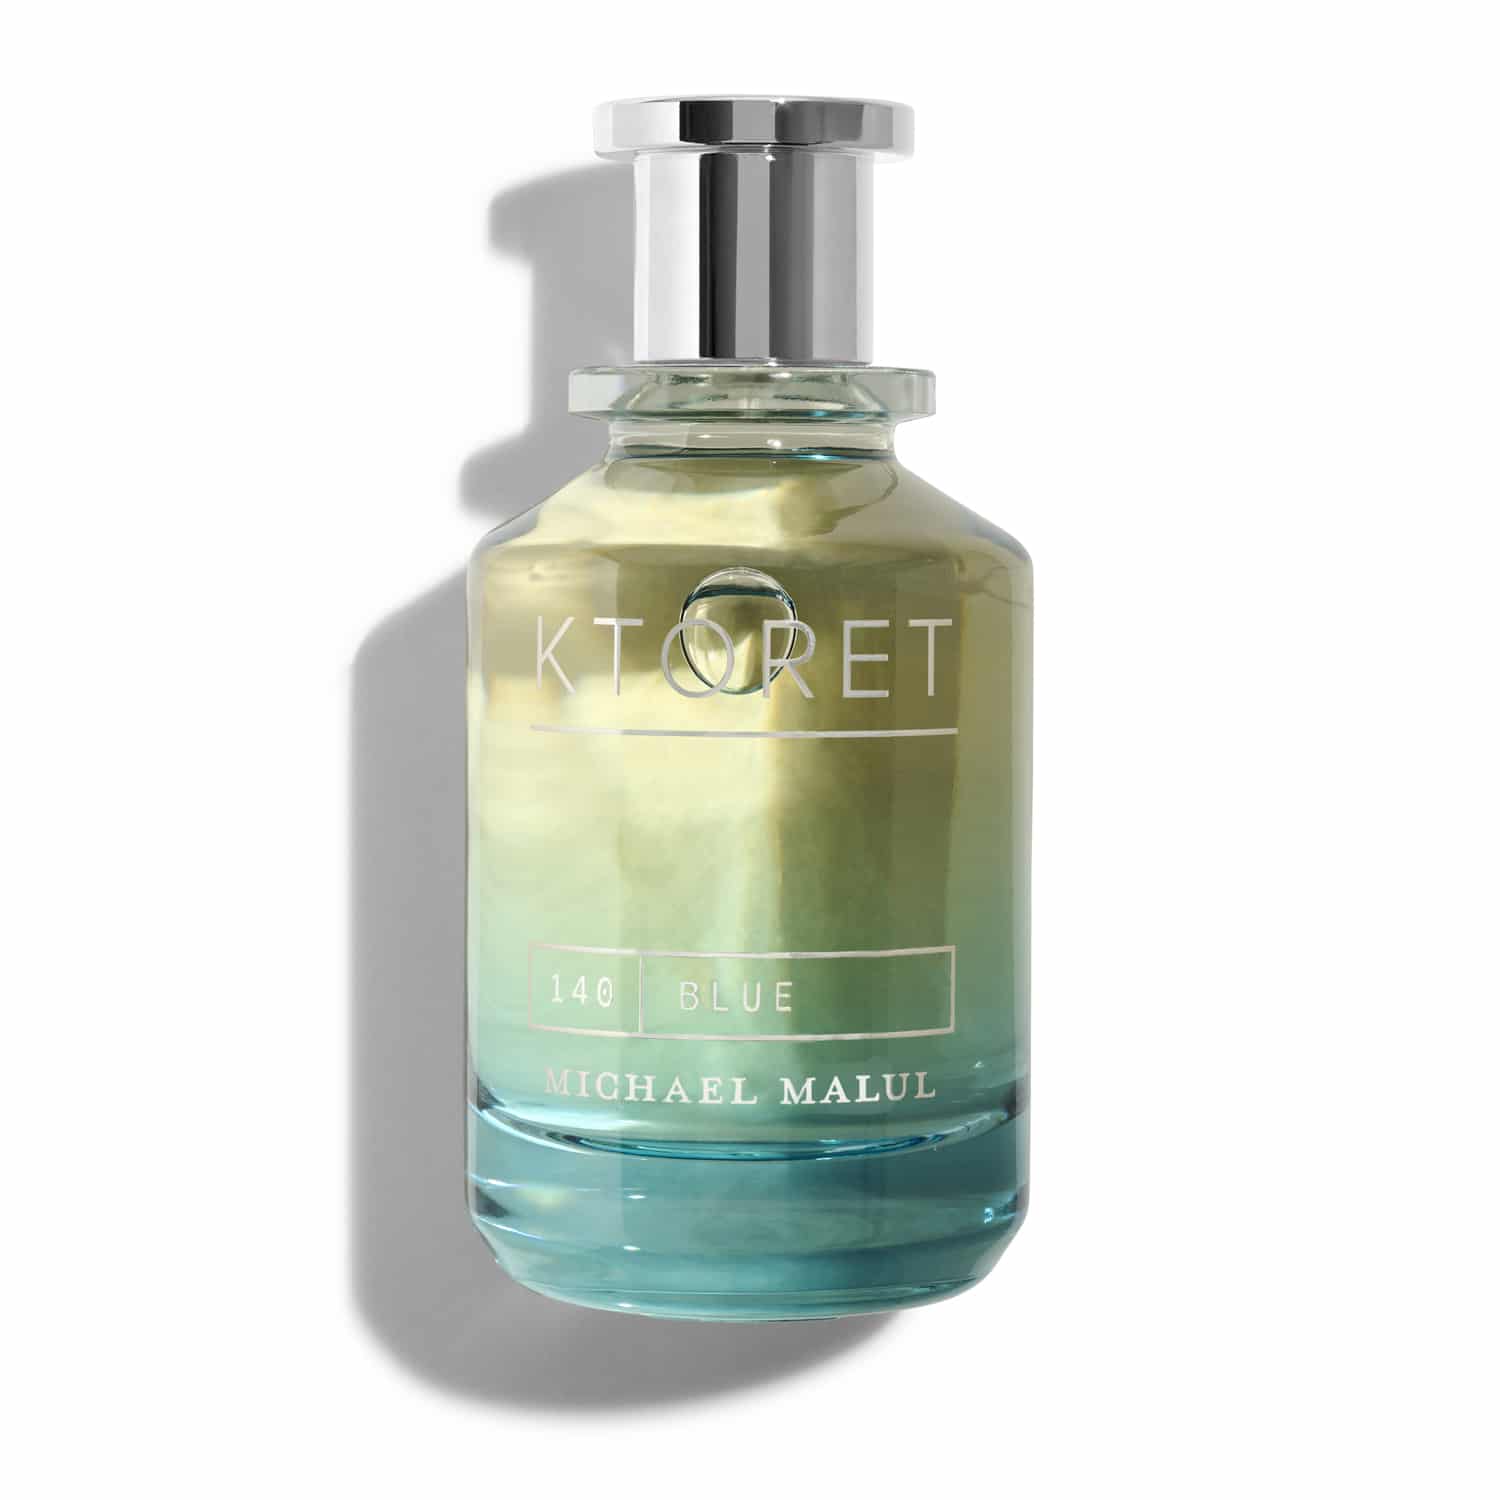 Ktoret 140 Blue Eau de Parfum Spray For Men by Michael Malul, Product image 2